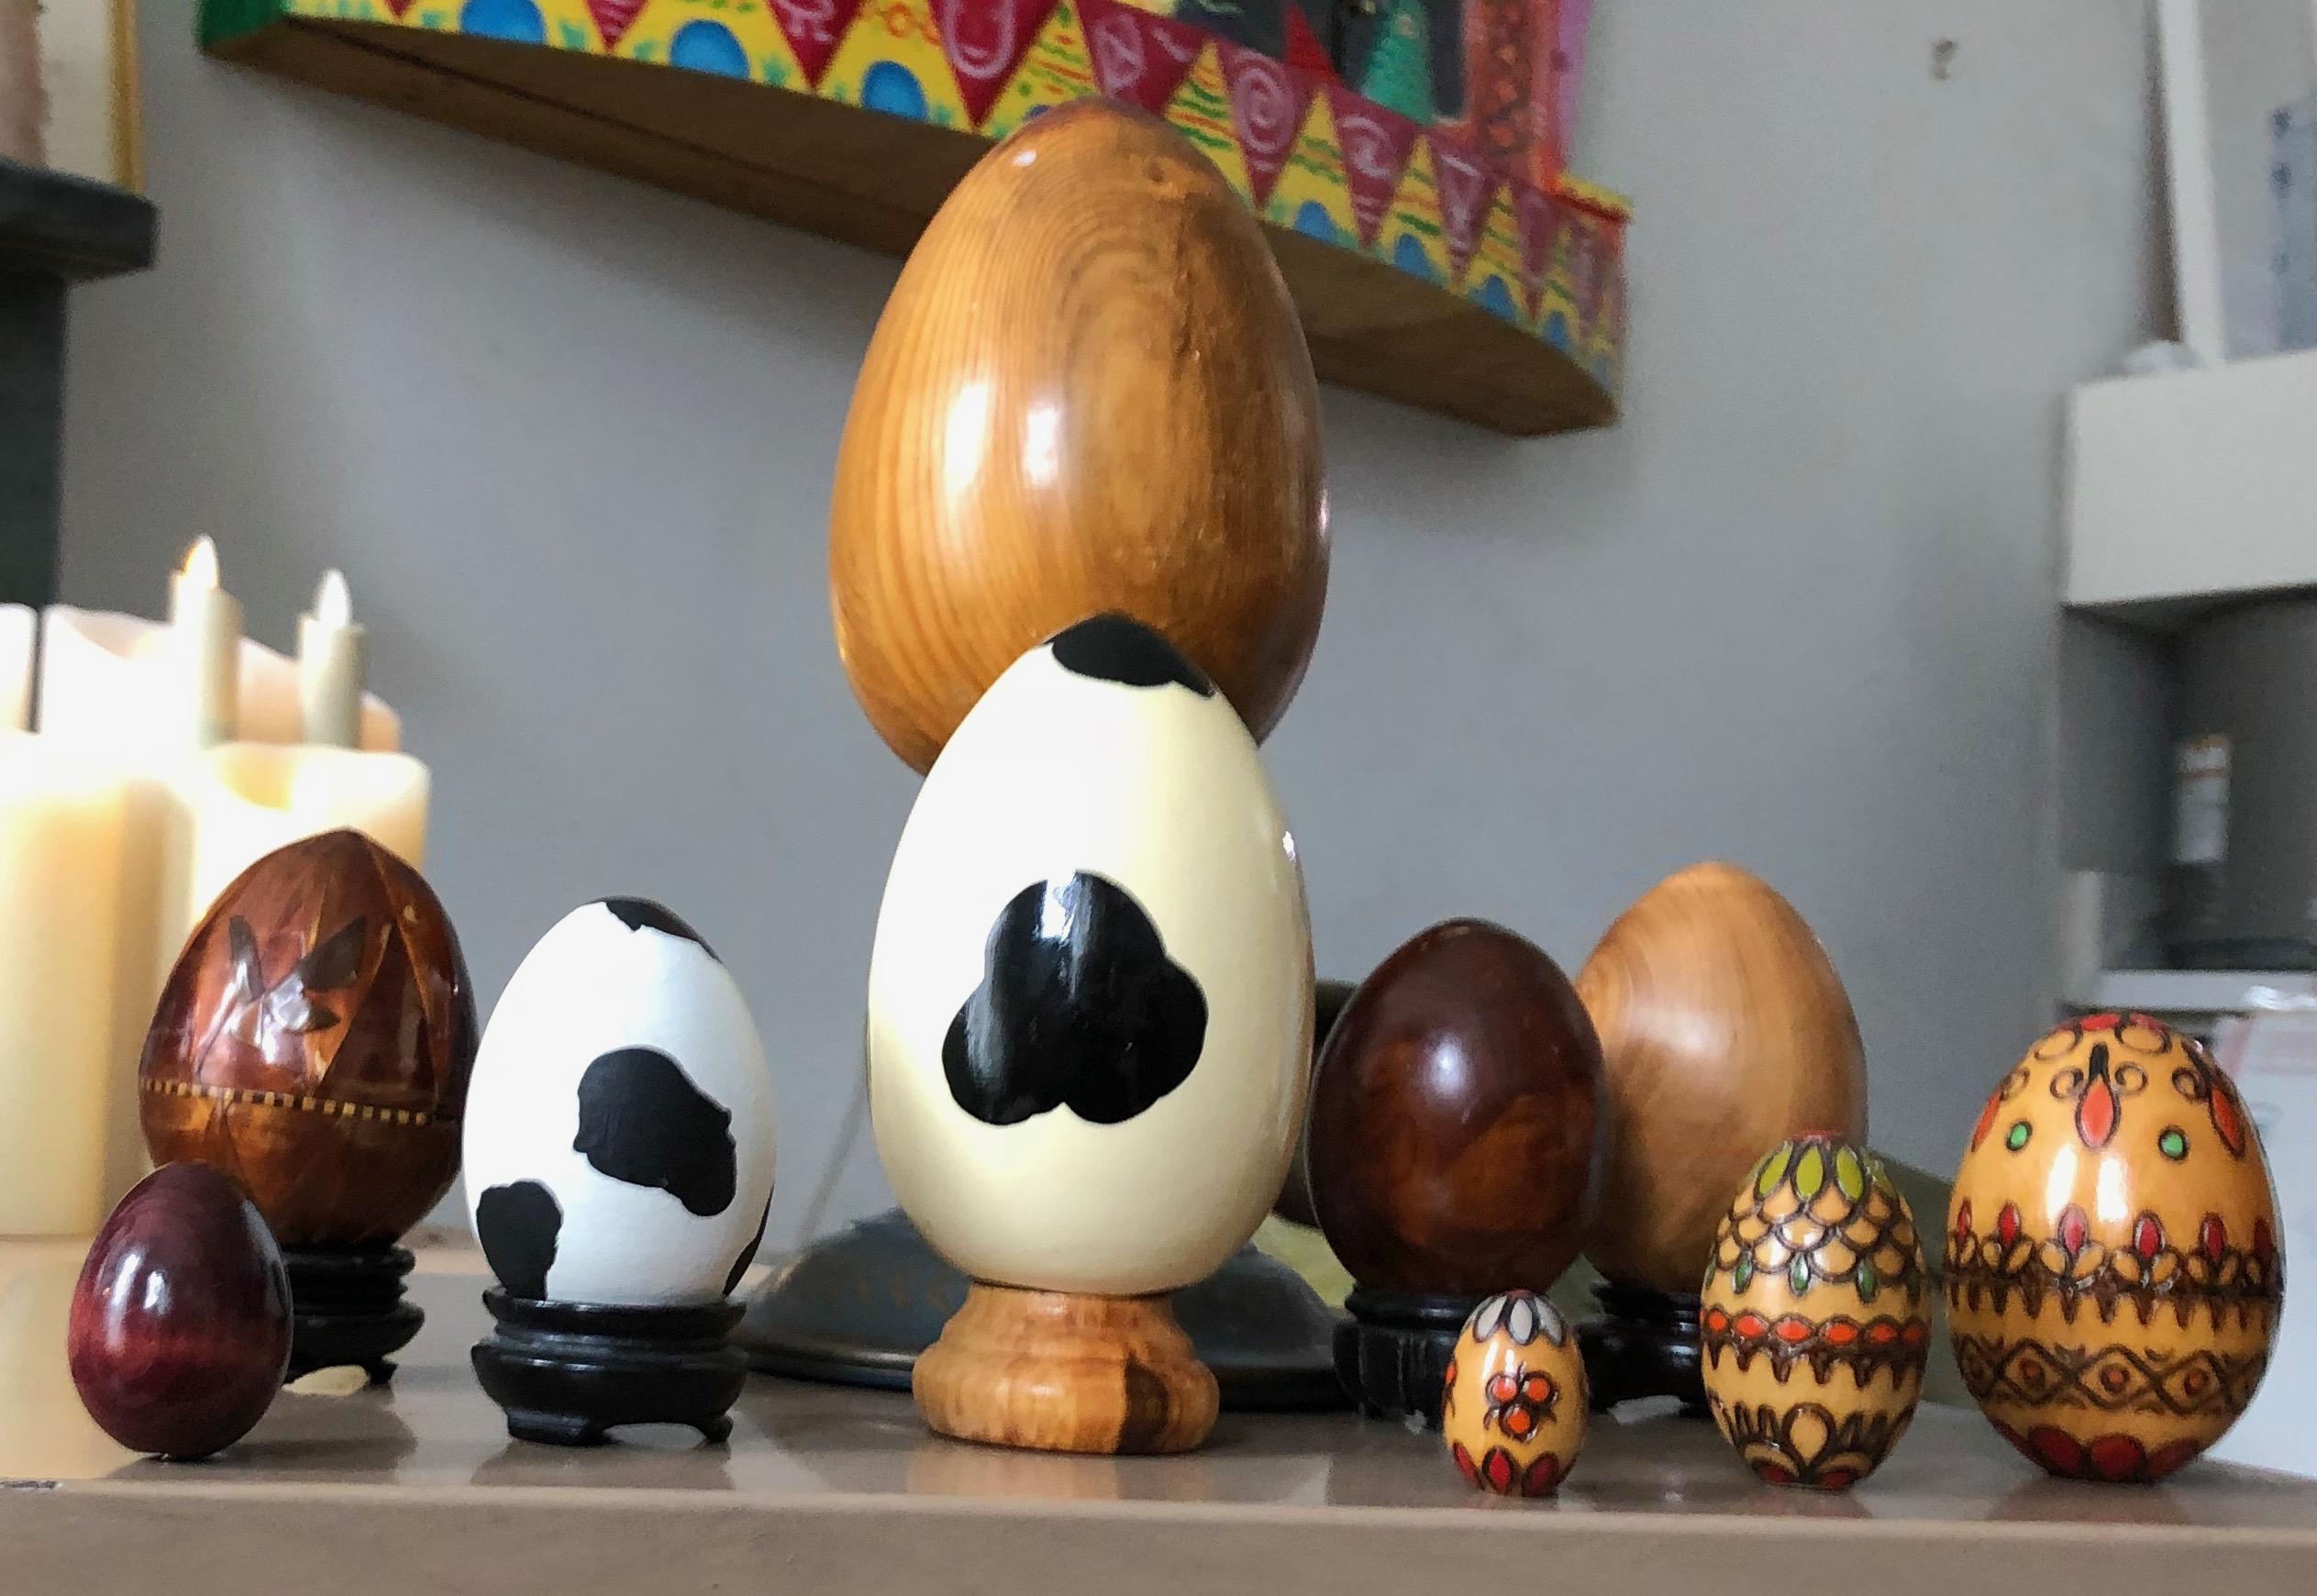 Sorgfältig zusammengestelltes Set von dekorativen Holzeiern im organisch-modernen Stil. Unterschiedliche Größen, siehe Bilder. Die drei bunten Eier auf der Vorderseite passen ineinander, wie bei einer russischen Puppe.
 